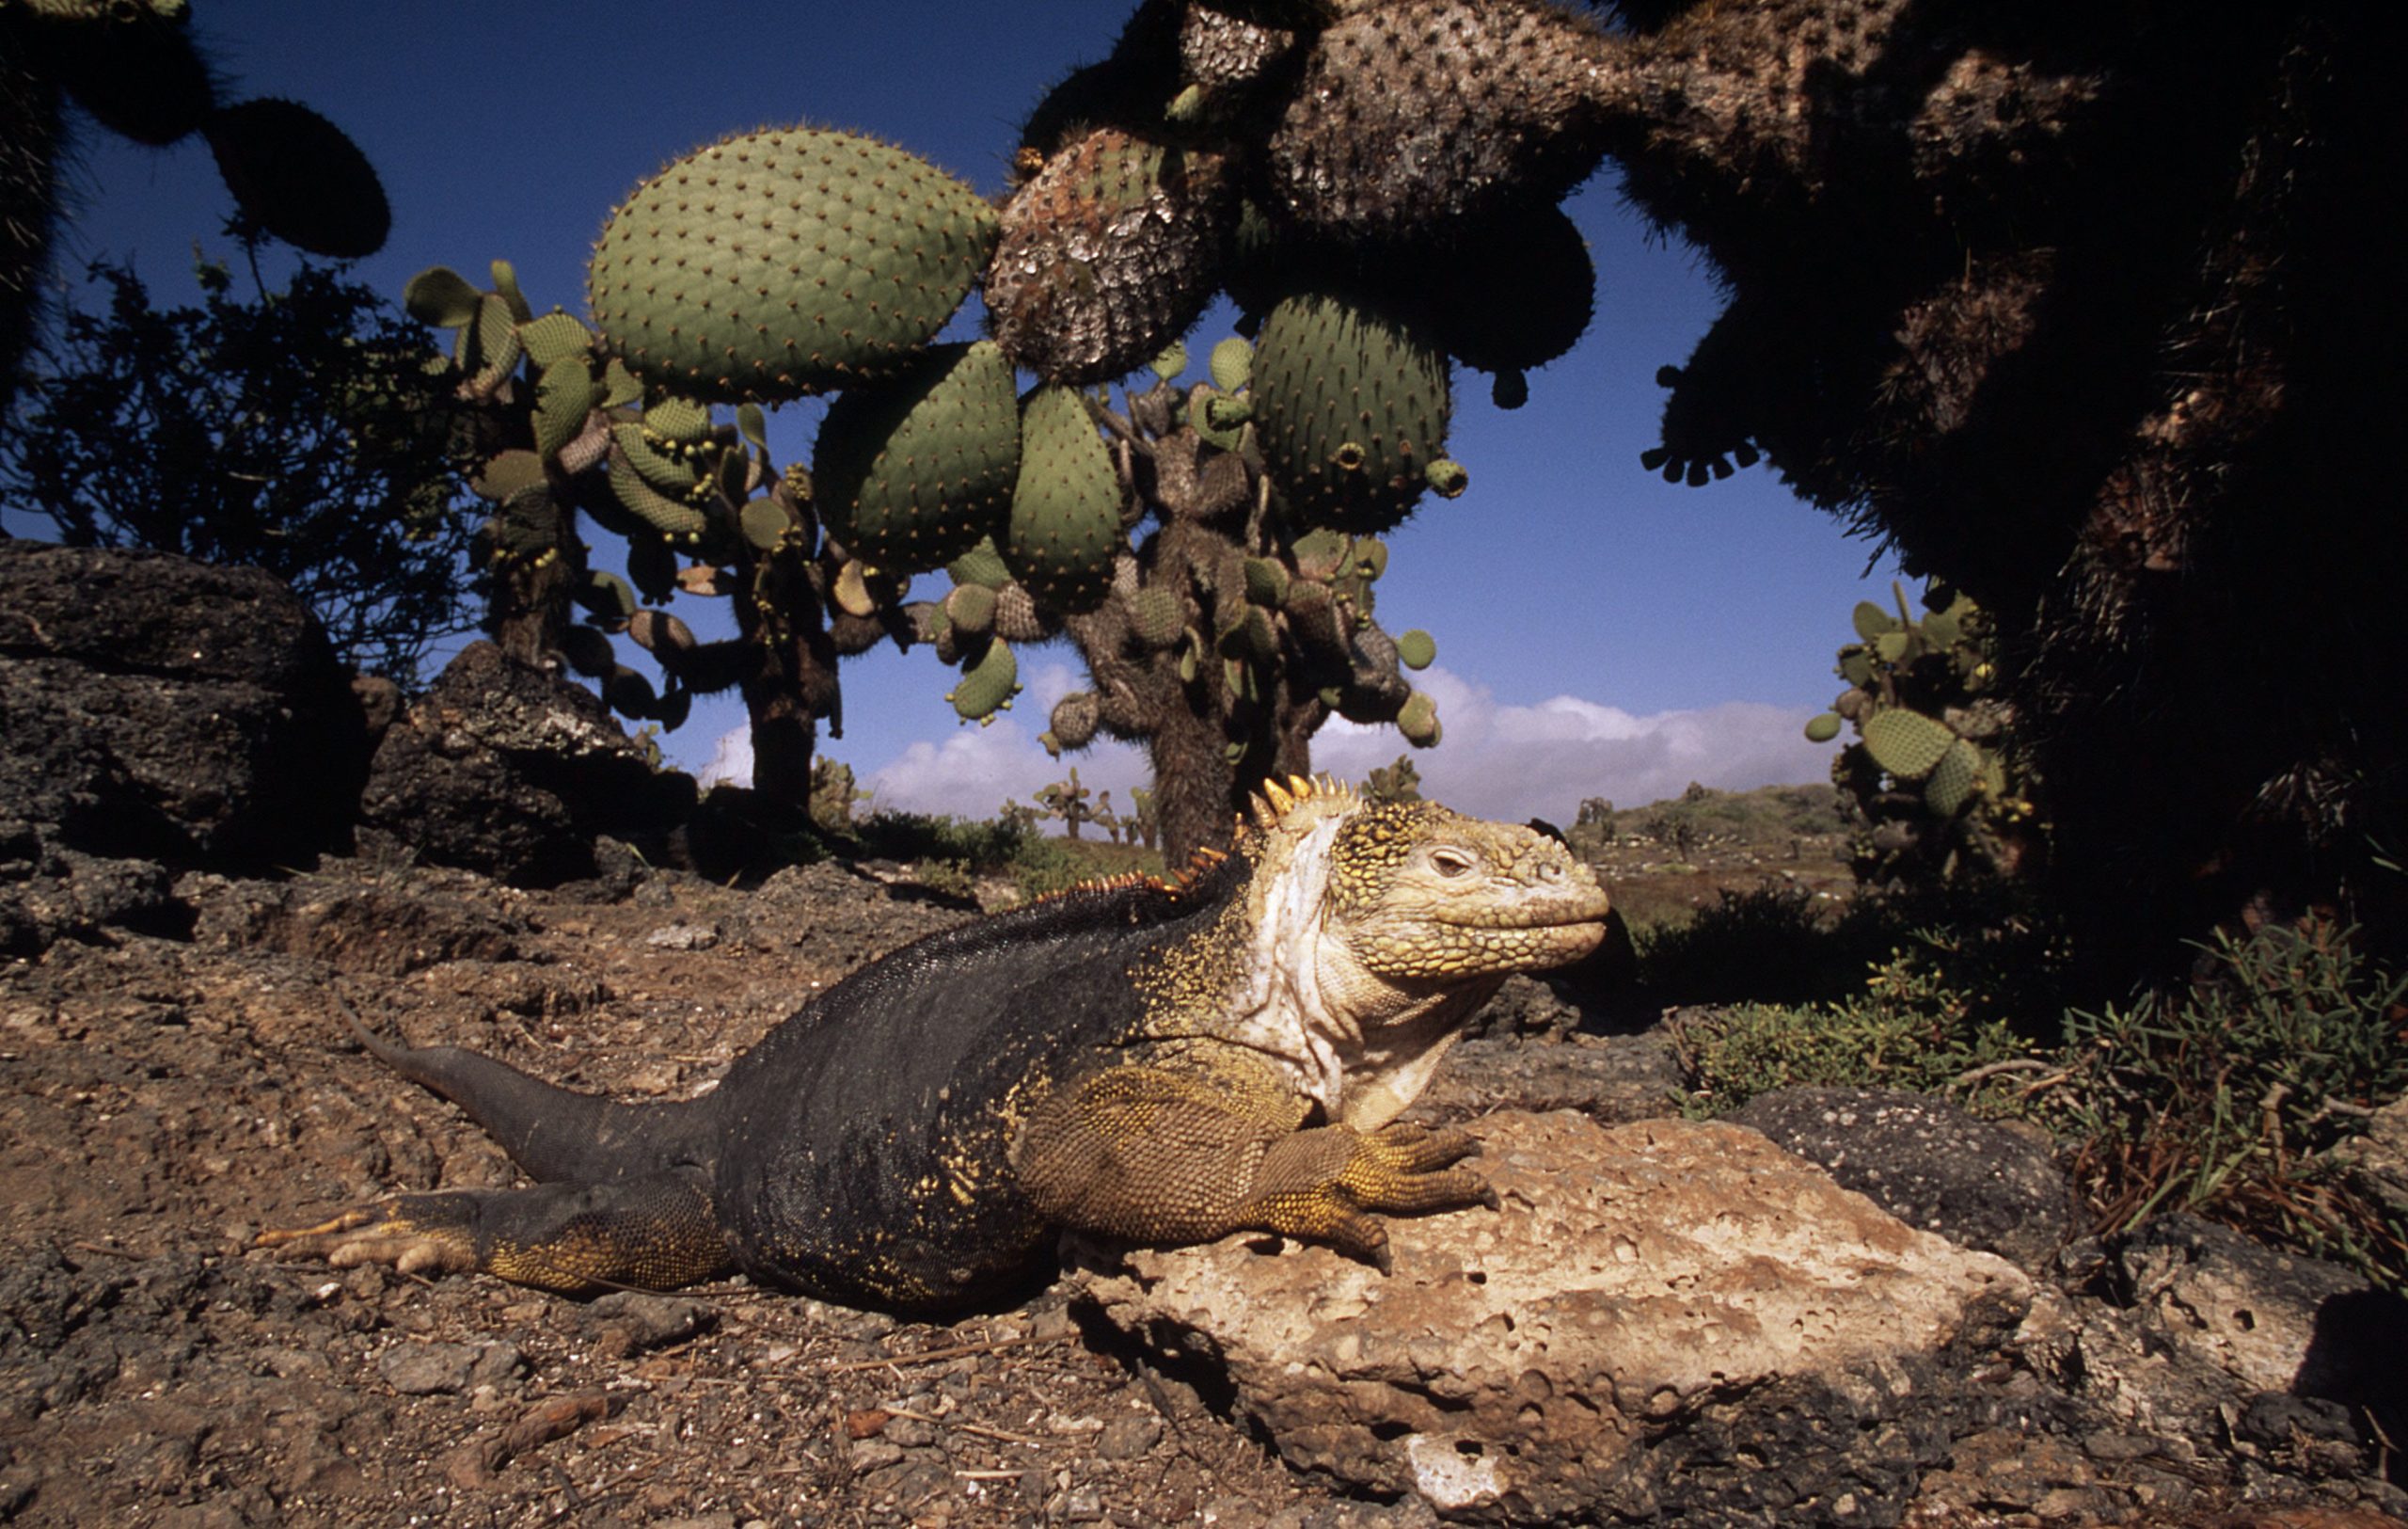 Un iguane terrestre des Galápagos